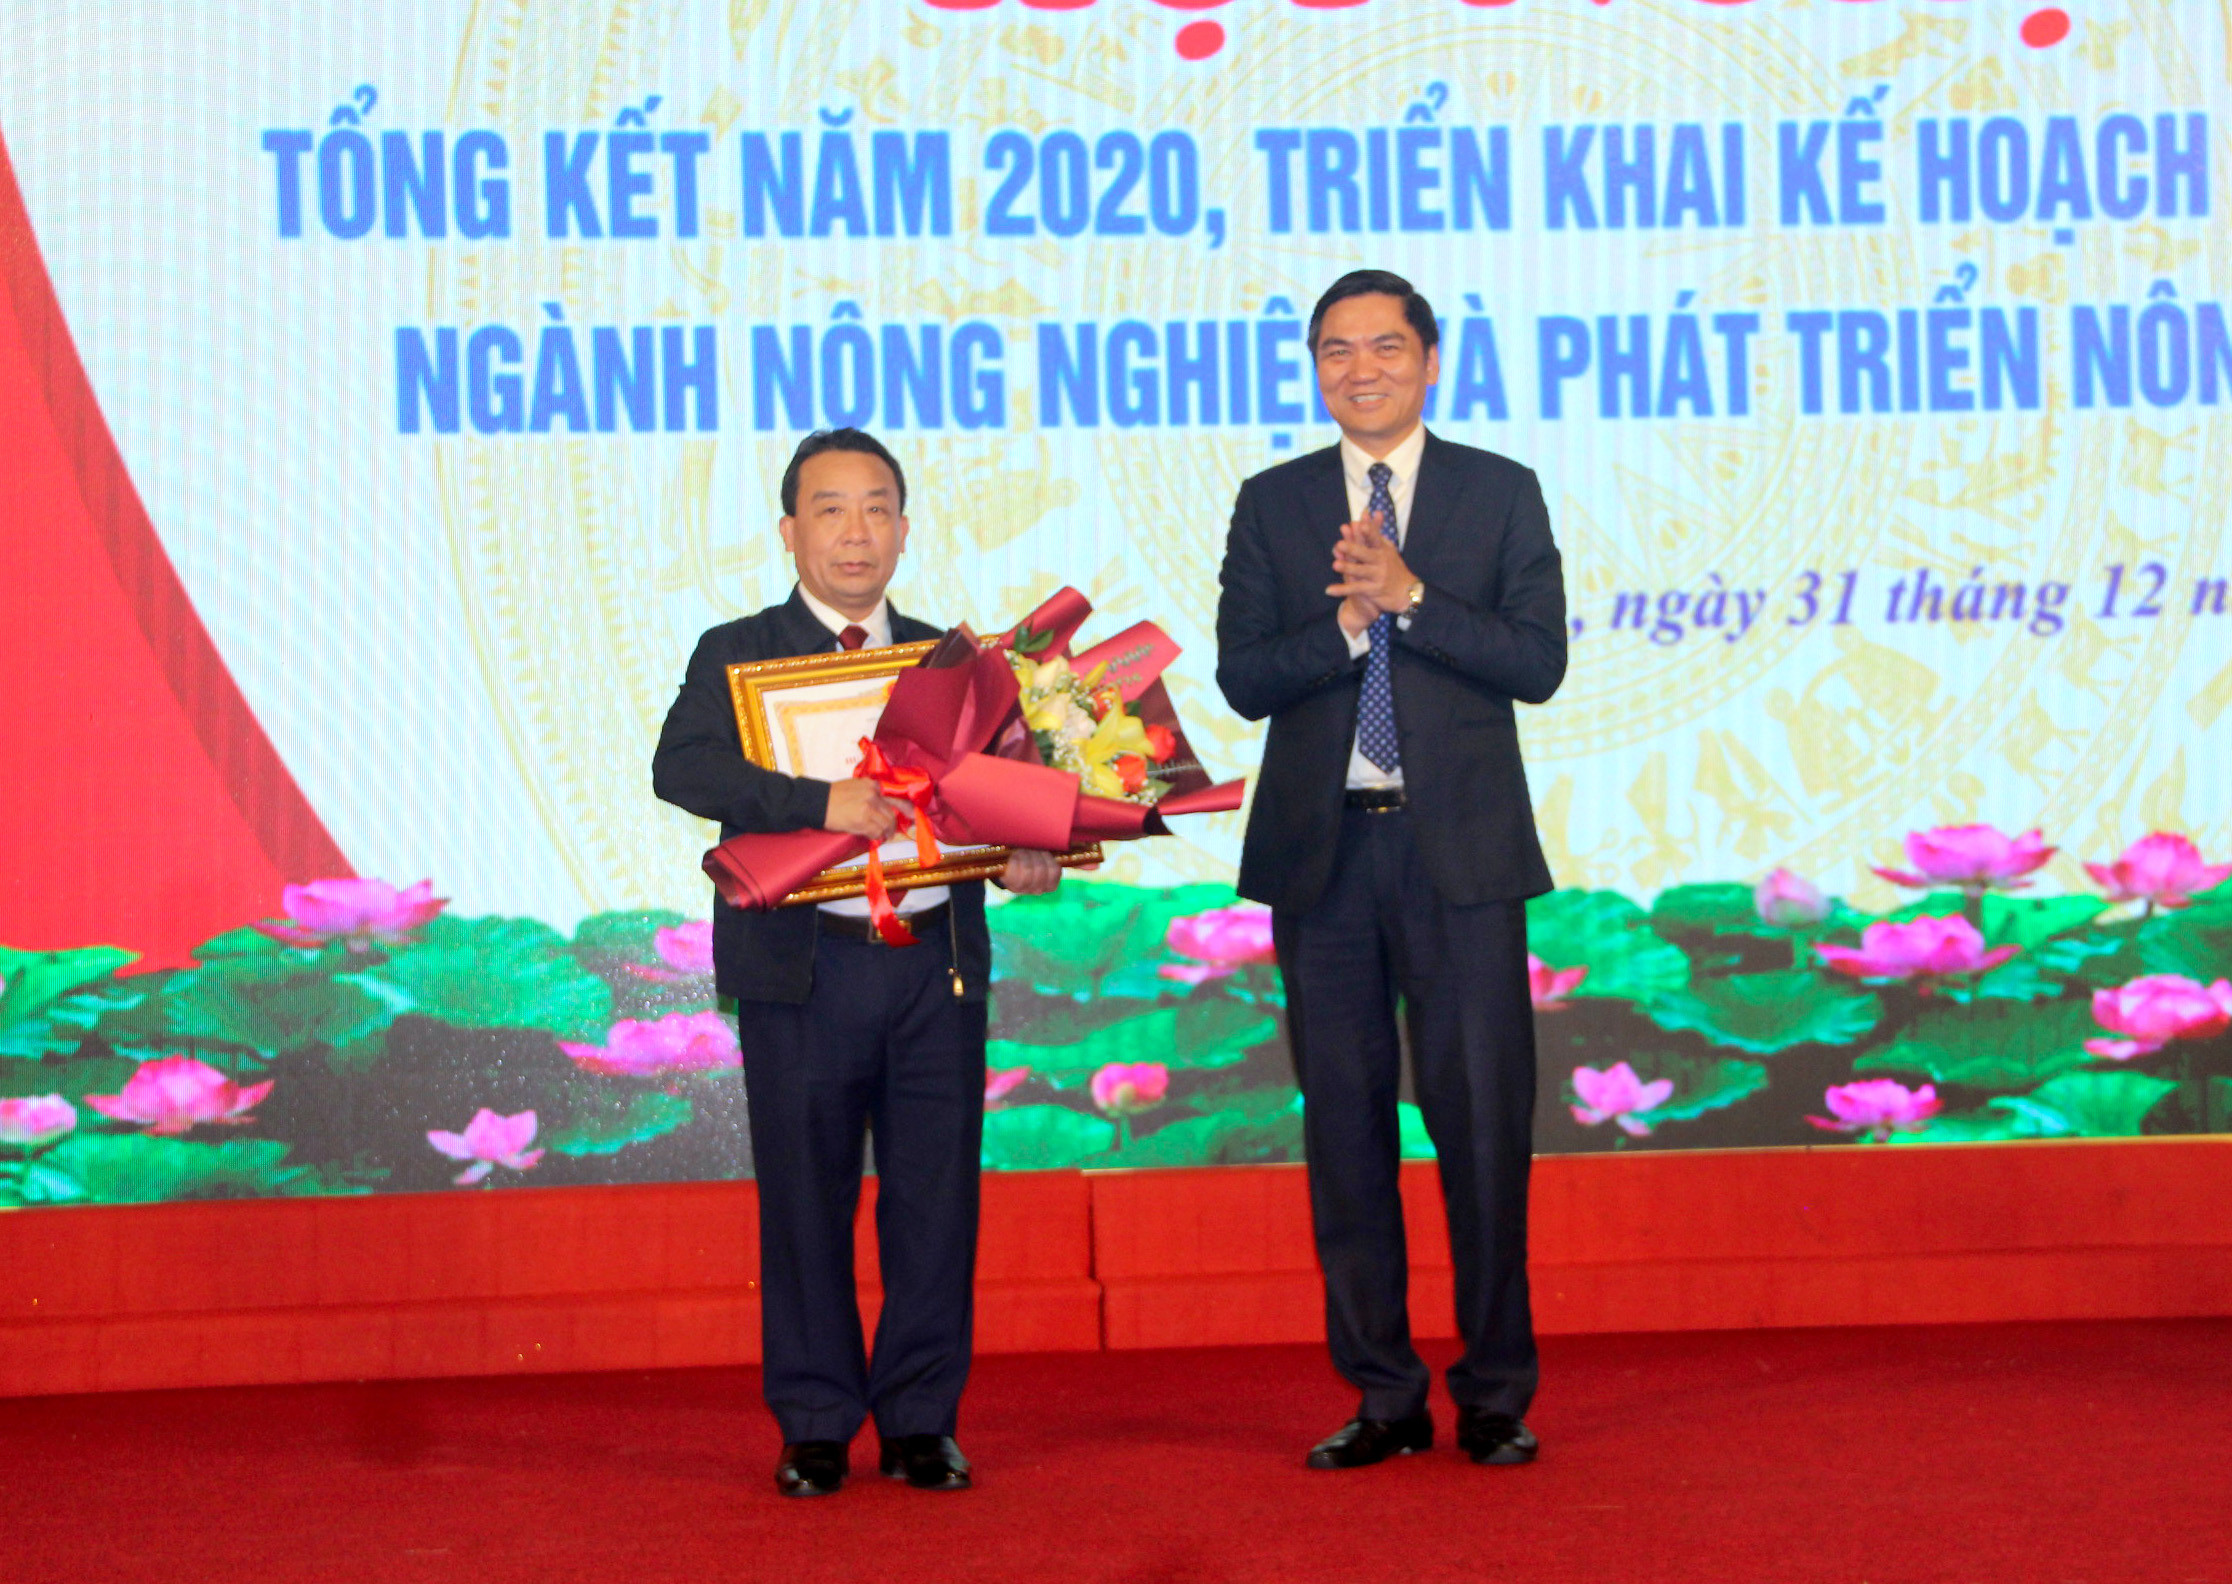 Đồng chí Nguyễn Văn Đệ- Giám đốc Sở Nông nghieẹp và PTNT nhận Huân chương Lao động hạng 3. Ảnh: Quang An